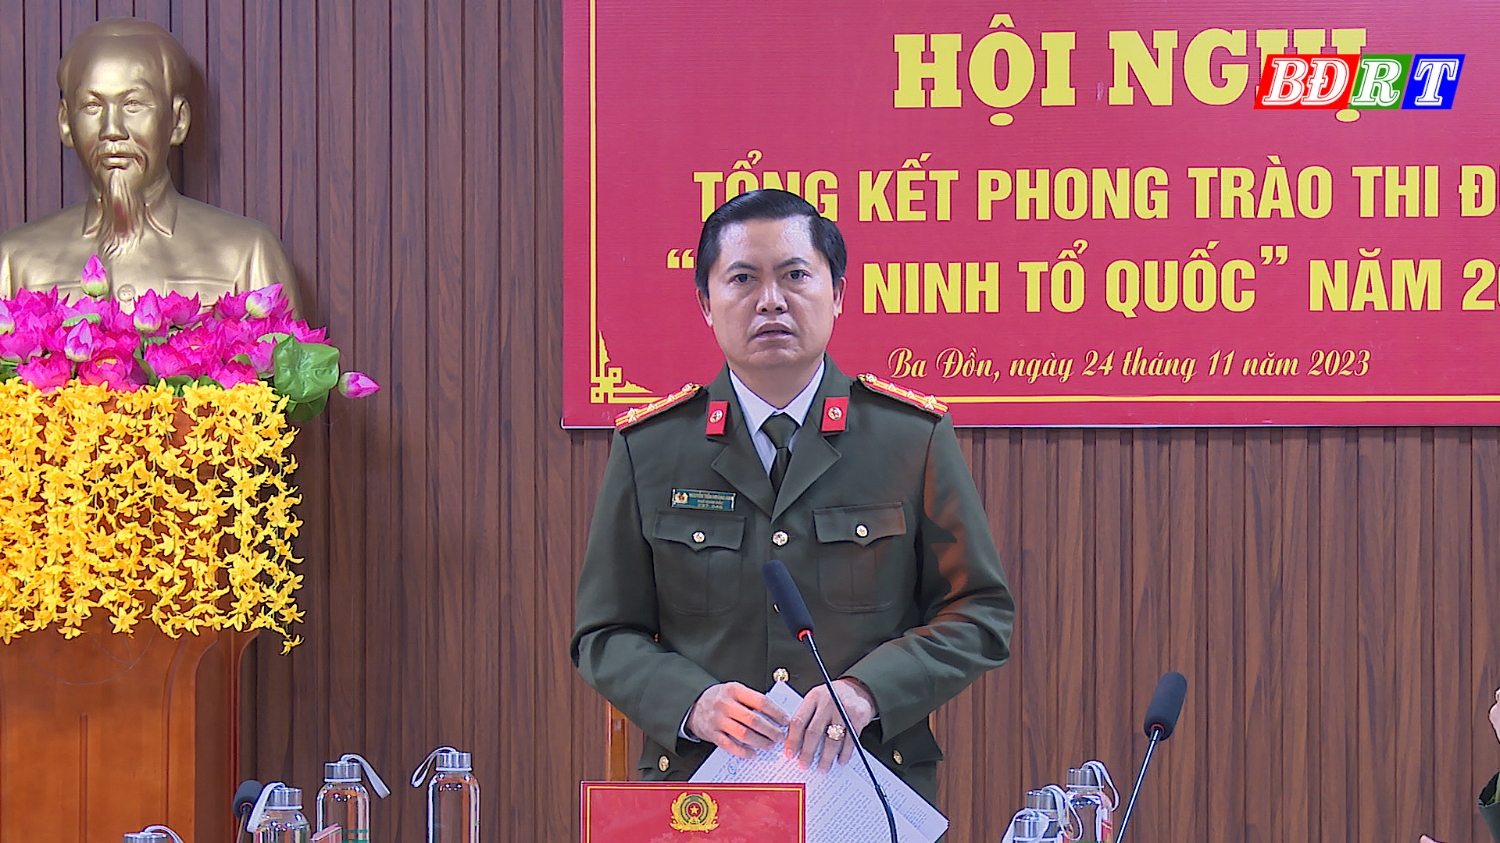 Đại tá Nguyễn Tiến Hoàng Anh, Phó giám đốc Công an tỉnh chủ trì hội nghị